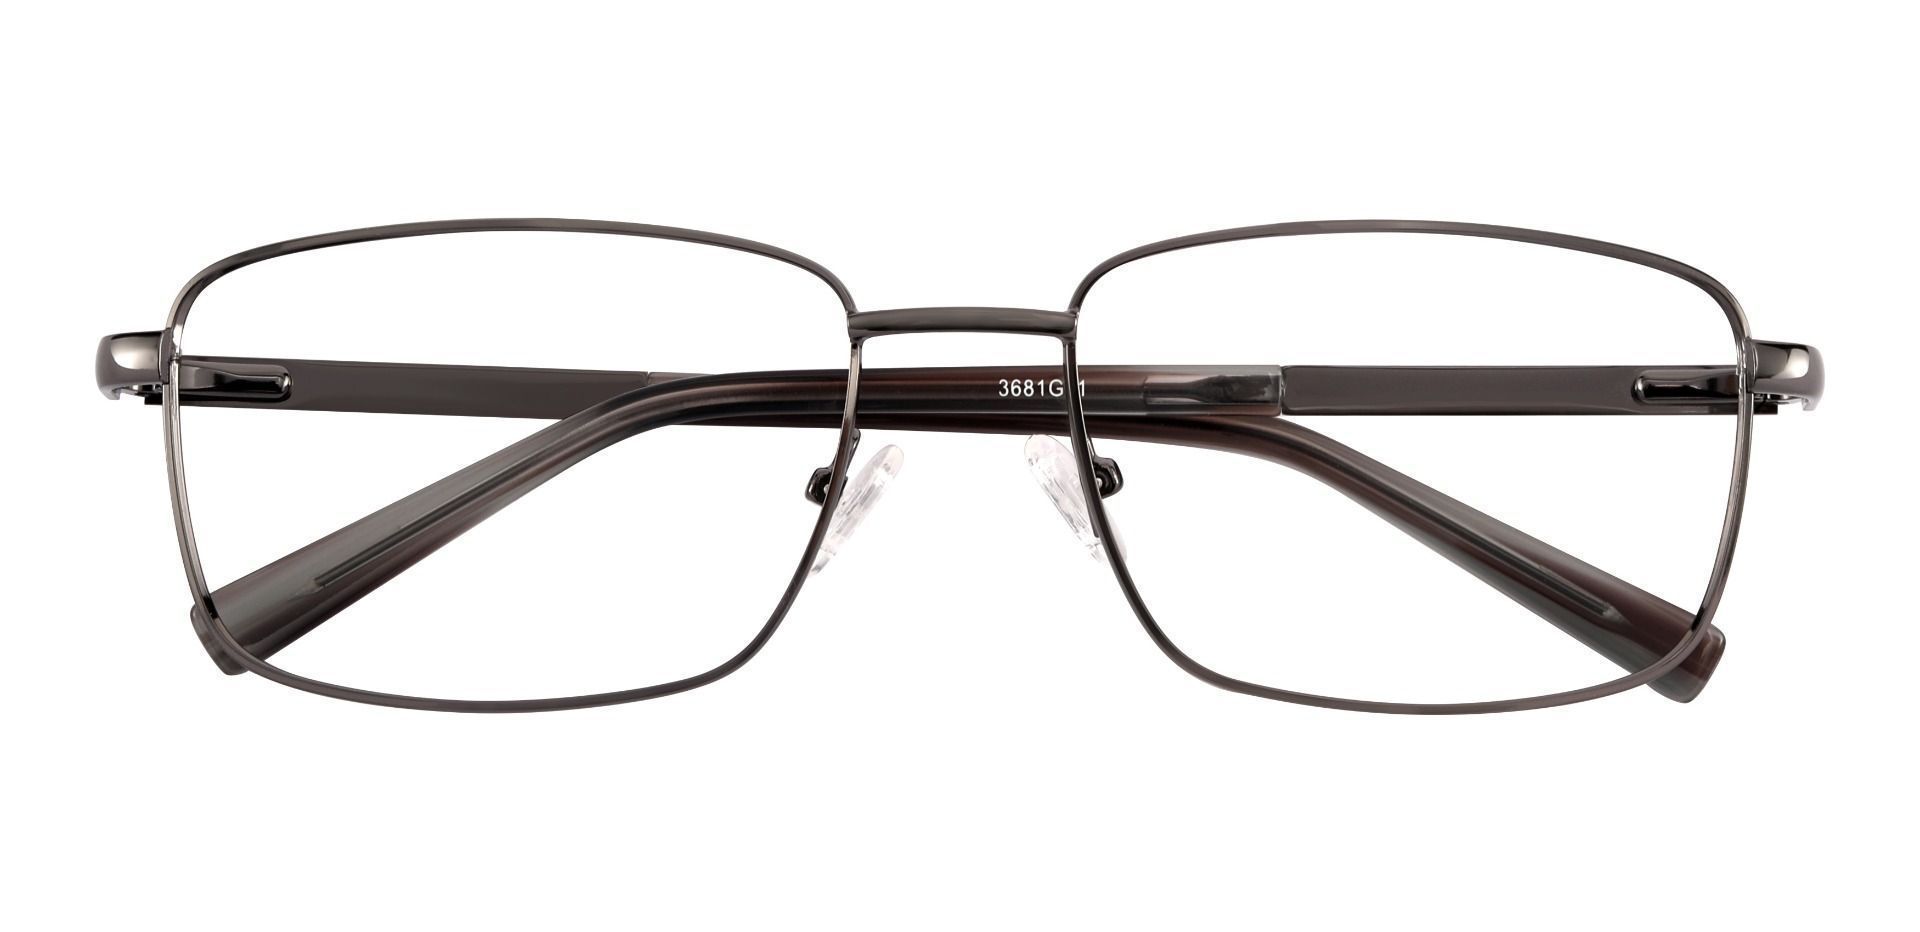 Marshall Rectangle Lined Bifocal Glasses - Gray